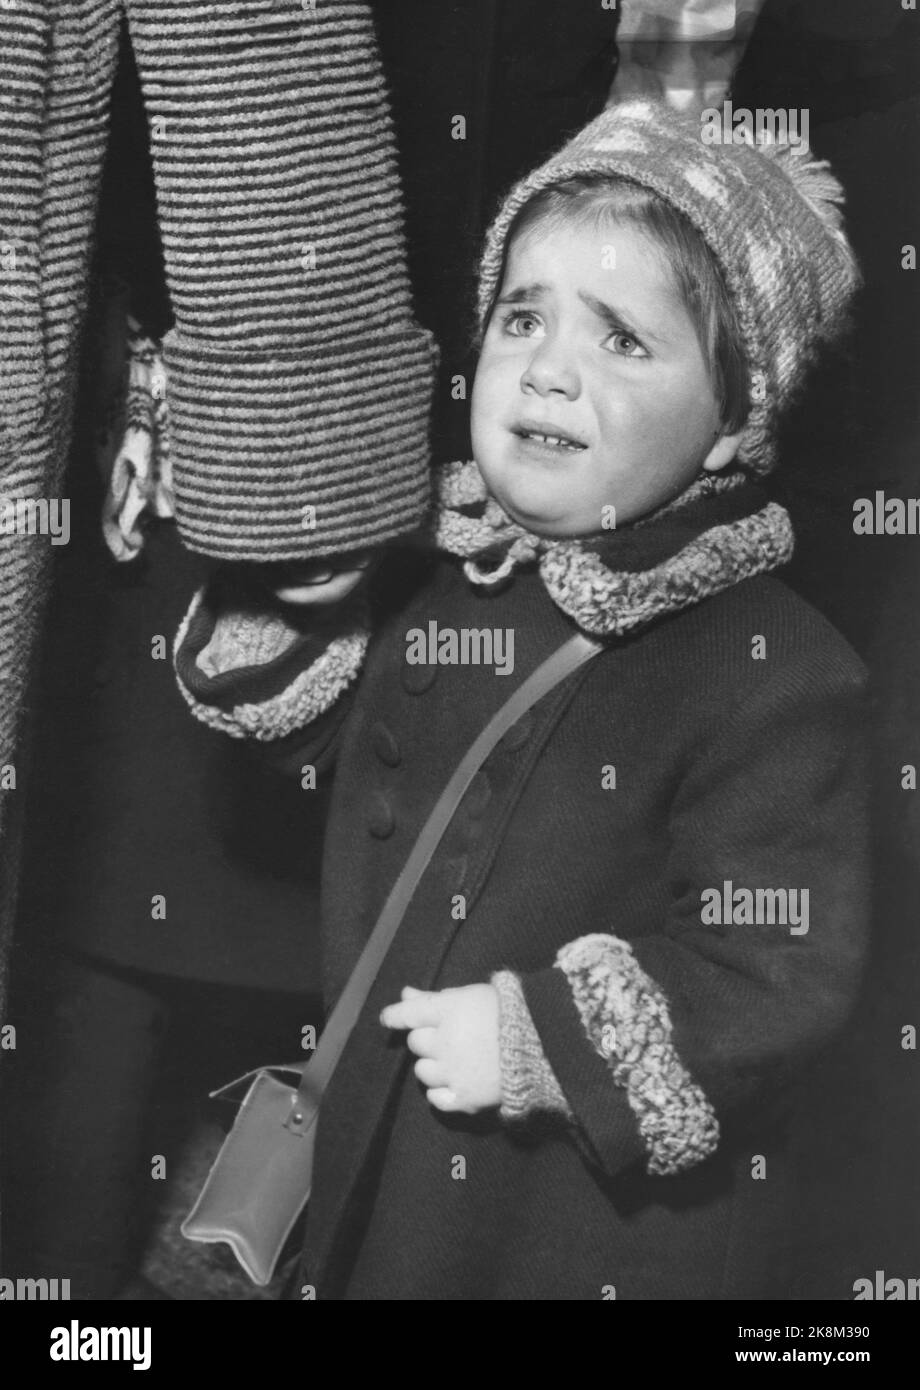 Oslo 195412 - les enfants rencontrent le Père Noël. Petite fille semble effrayé sur le père Noël. J’en crasse. Tient la mère dans la main. Photo: Aage Storløkken / actuel / NTB Banque D'Images